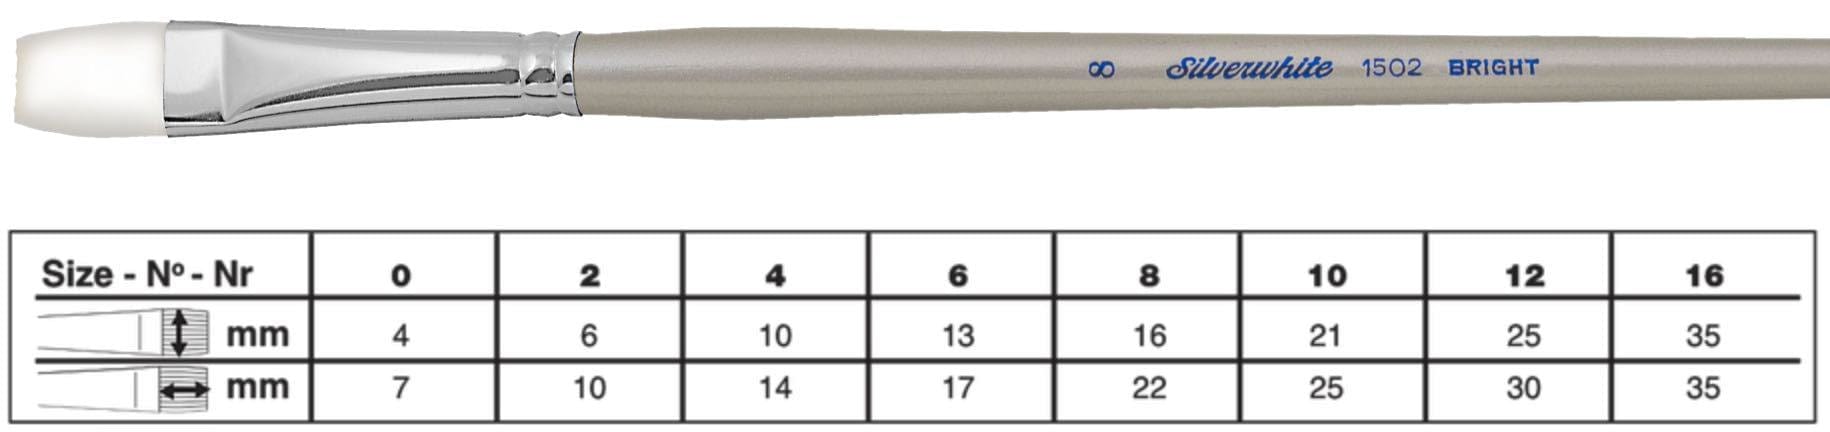 SILVER BRUSH SILVER BRUSH 2 (6mm x 10mm) Silver Brush 1502 Silverwhite Long Handle